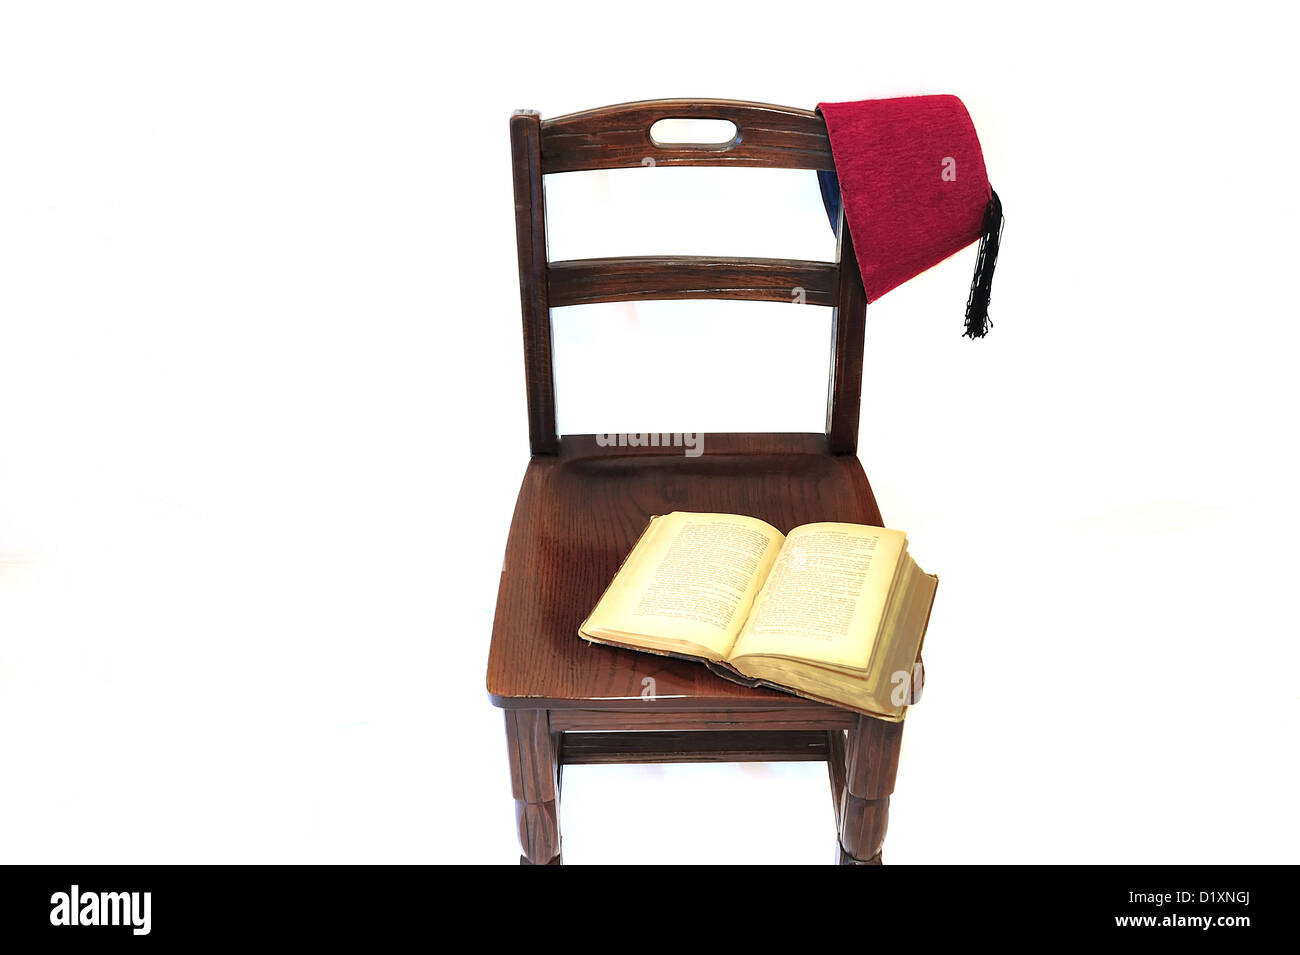 Un vieux livre ouvert laissé ouvert sur une vieille chaise. Un historique du Moyen-Orient (tarboosh) est suspendu à la présidence Banque D'Images